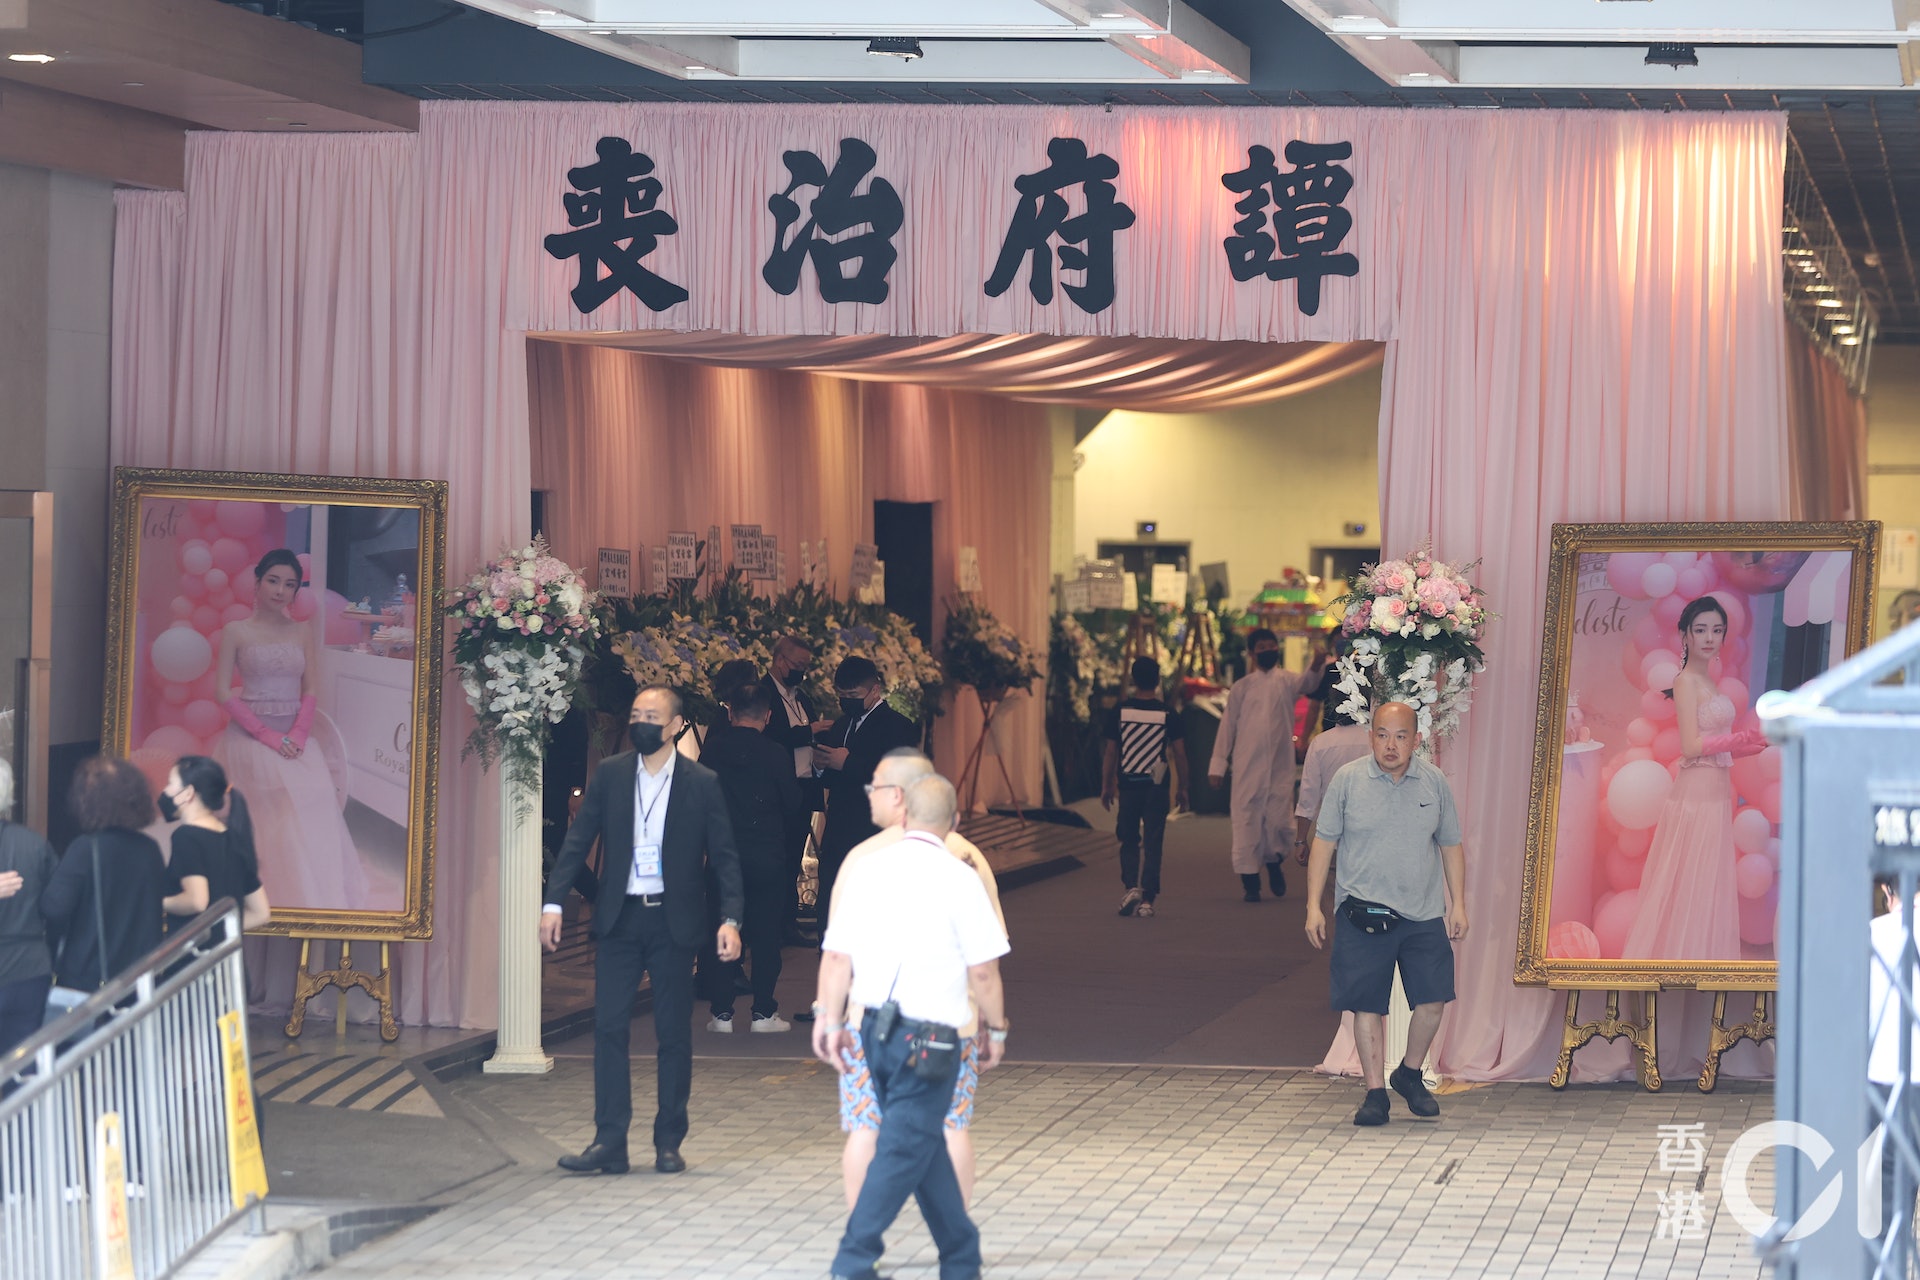 Đám đông xếp hàng dài đến viếng nữ người mẫu Hồng Kông bị giết hại, phân xác - Ảnh 2.